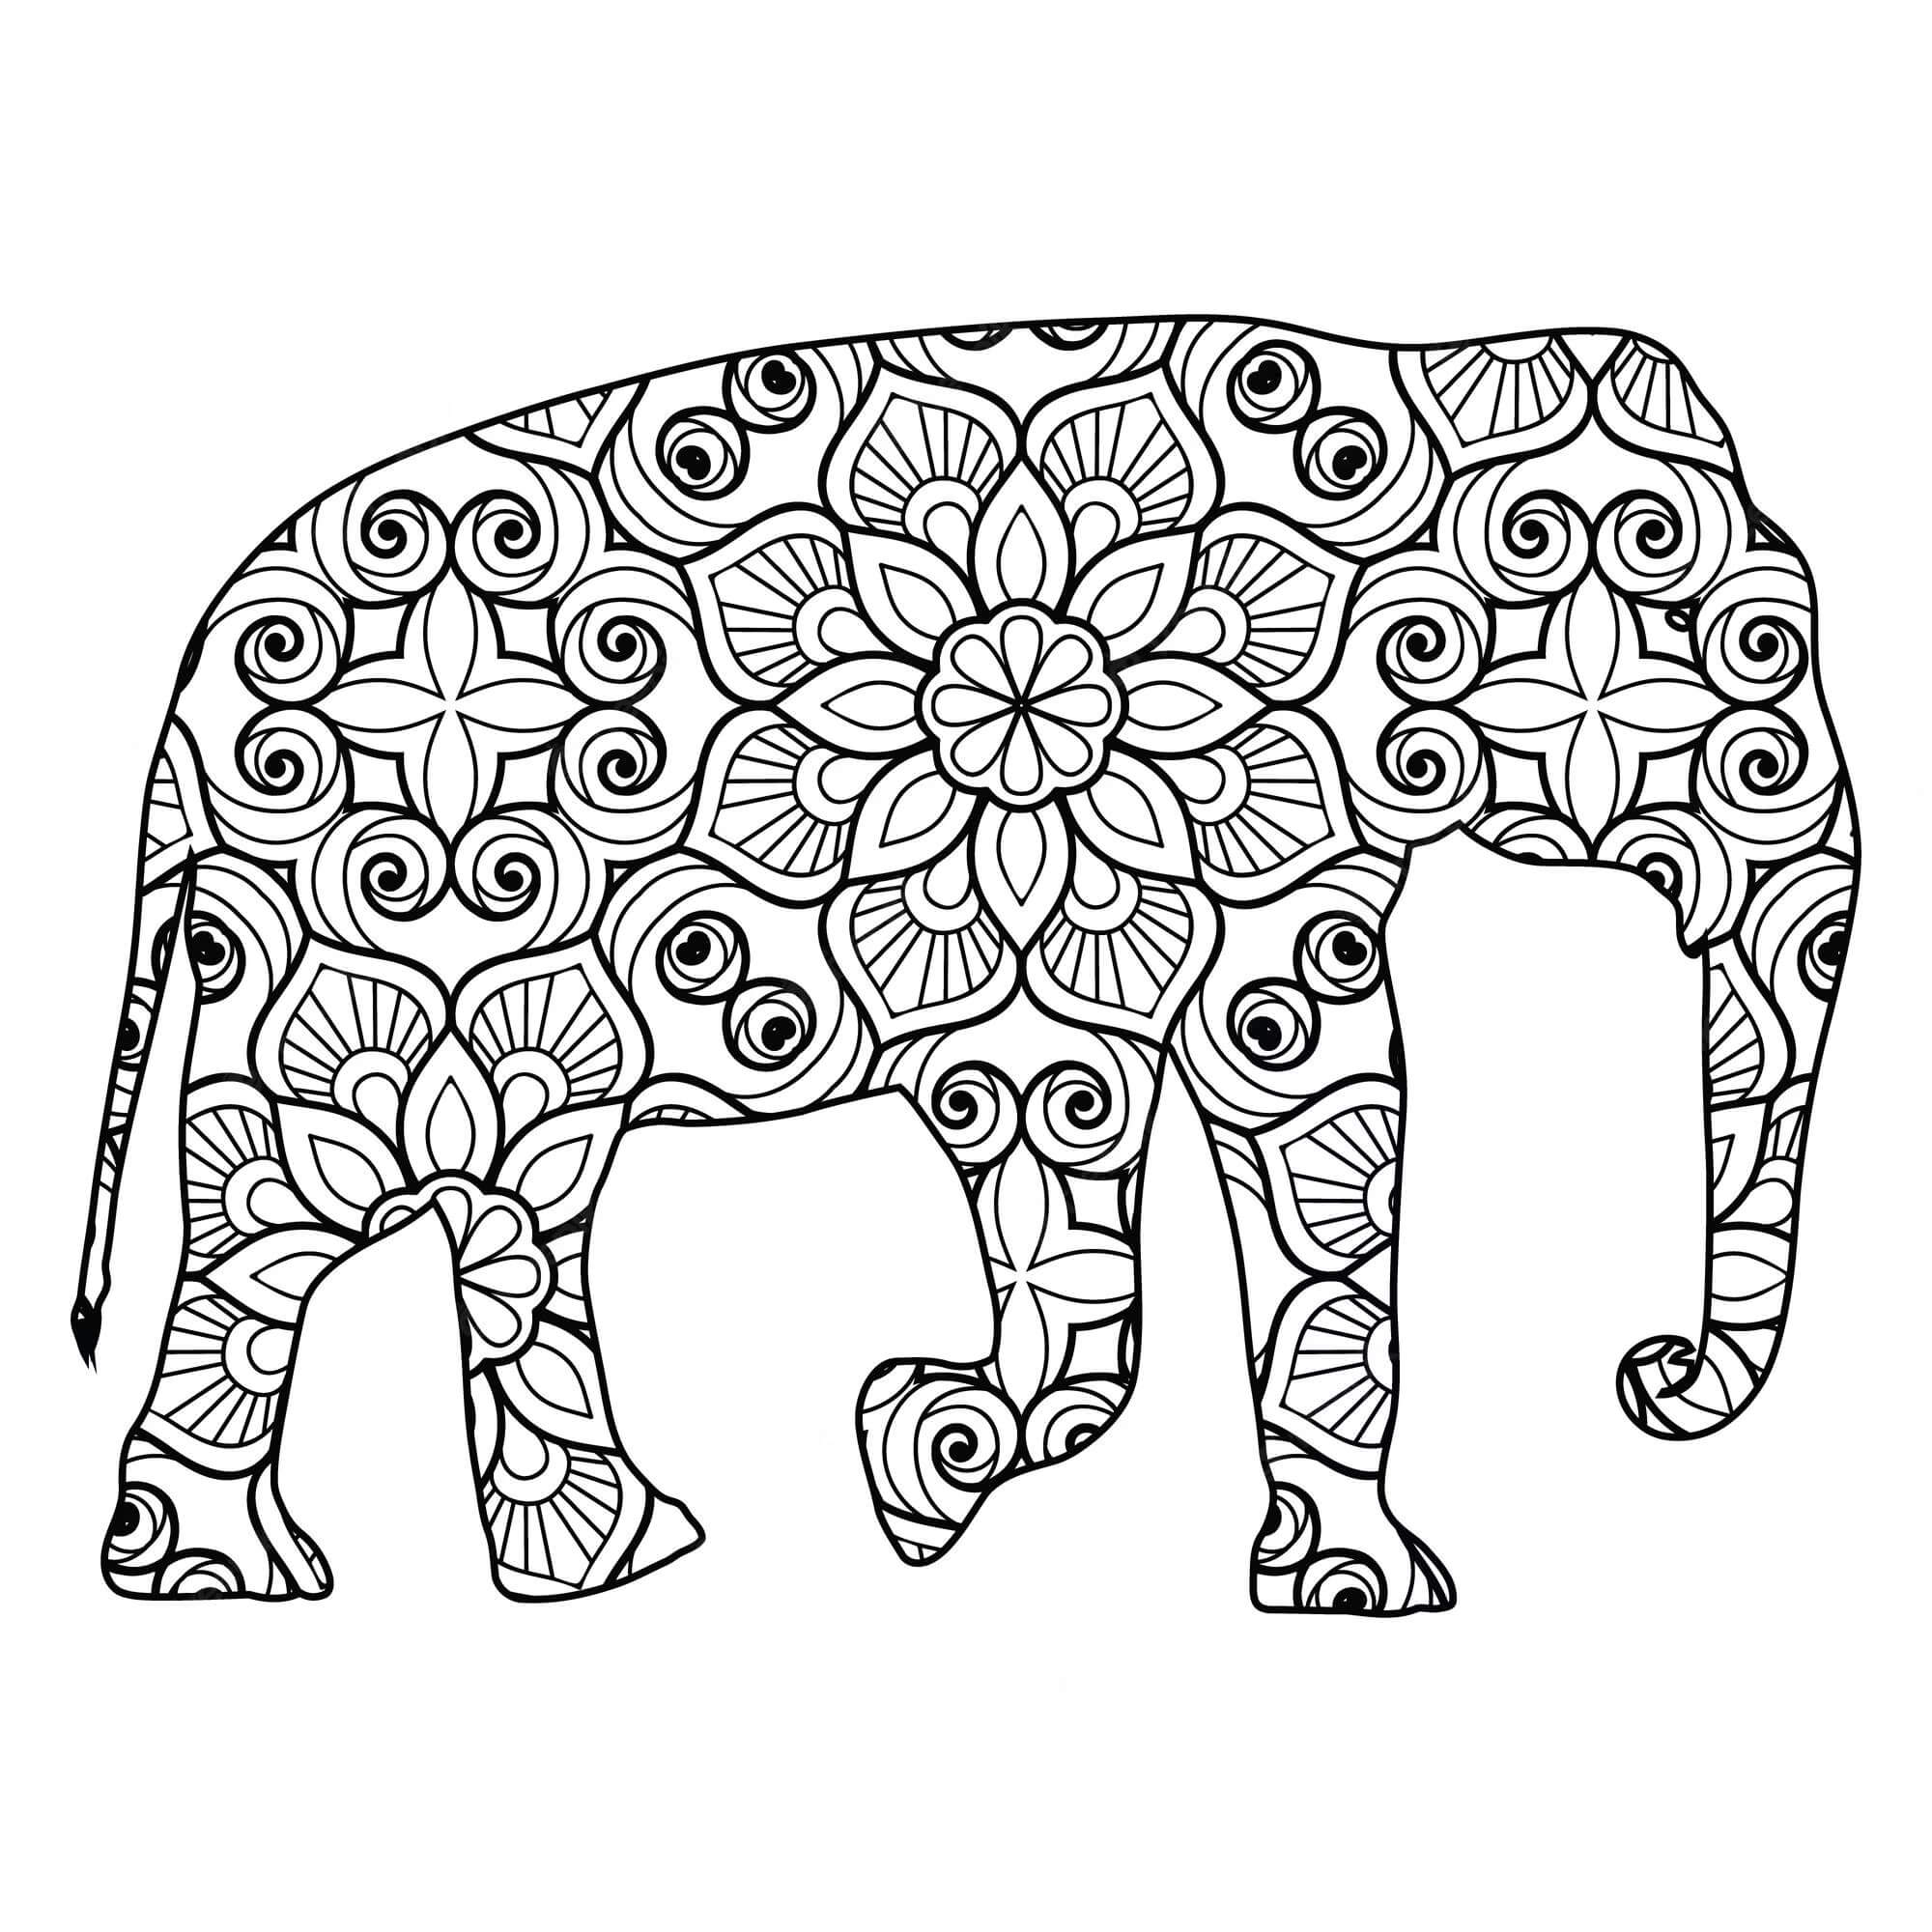 Mandala Elephant Coloring Page - Sheet 1 Mandalas